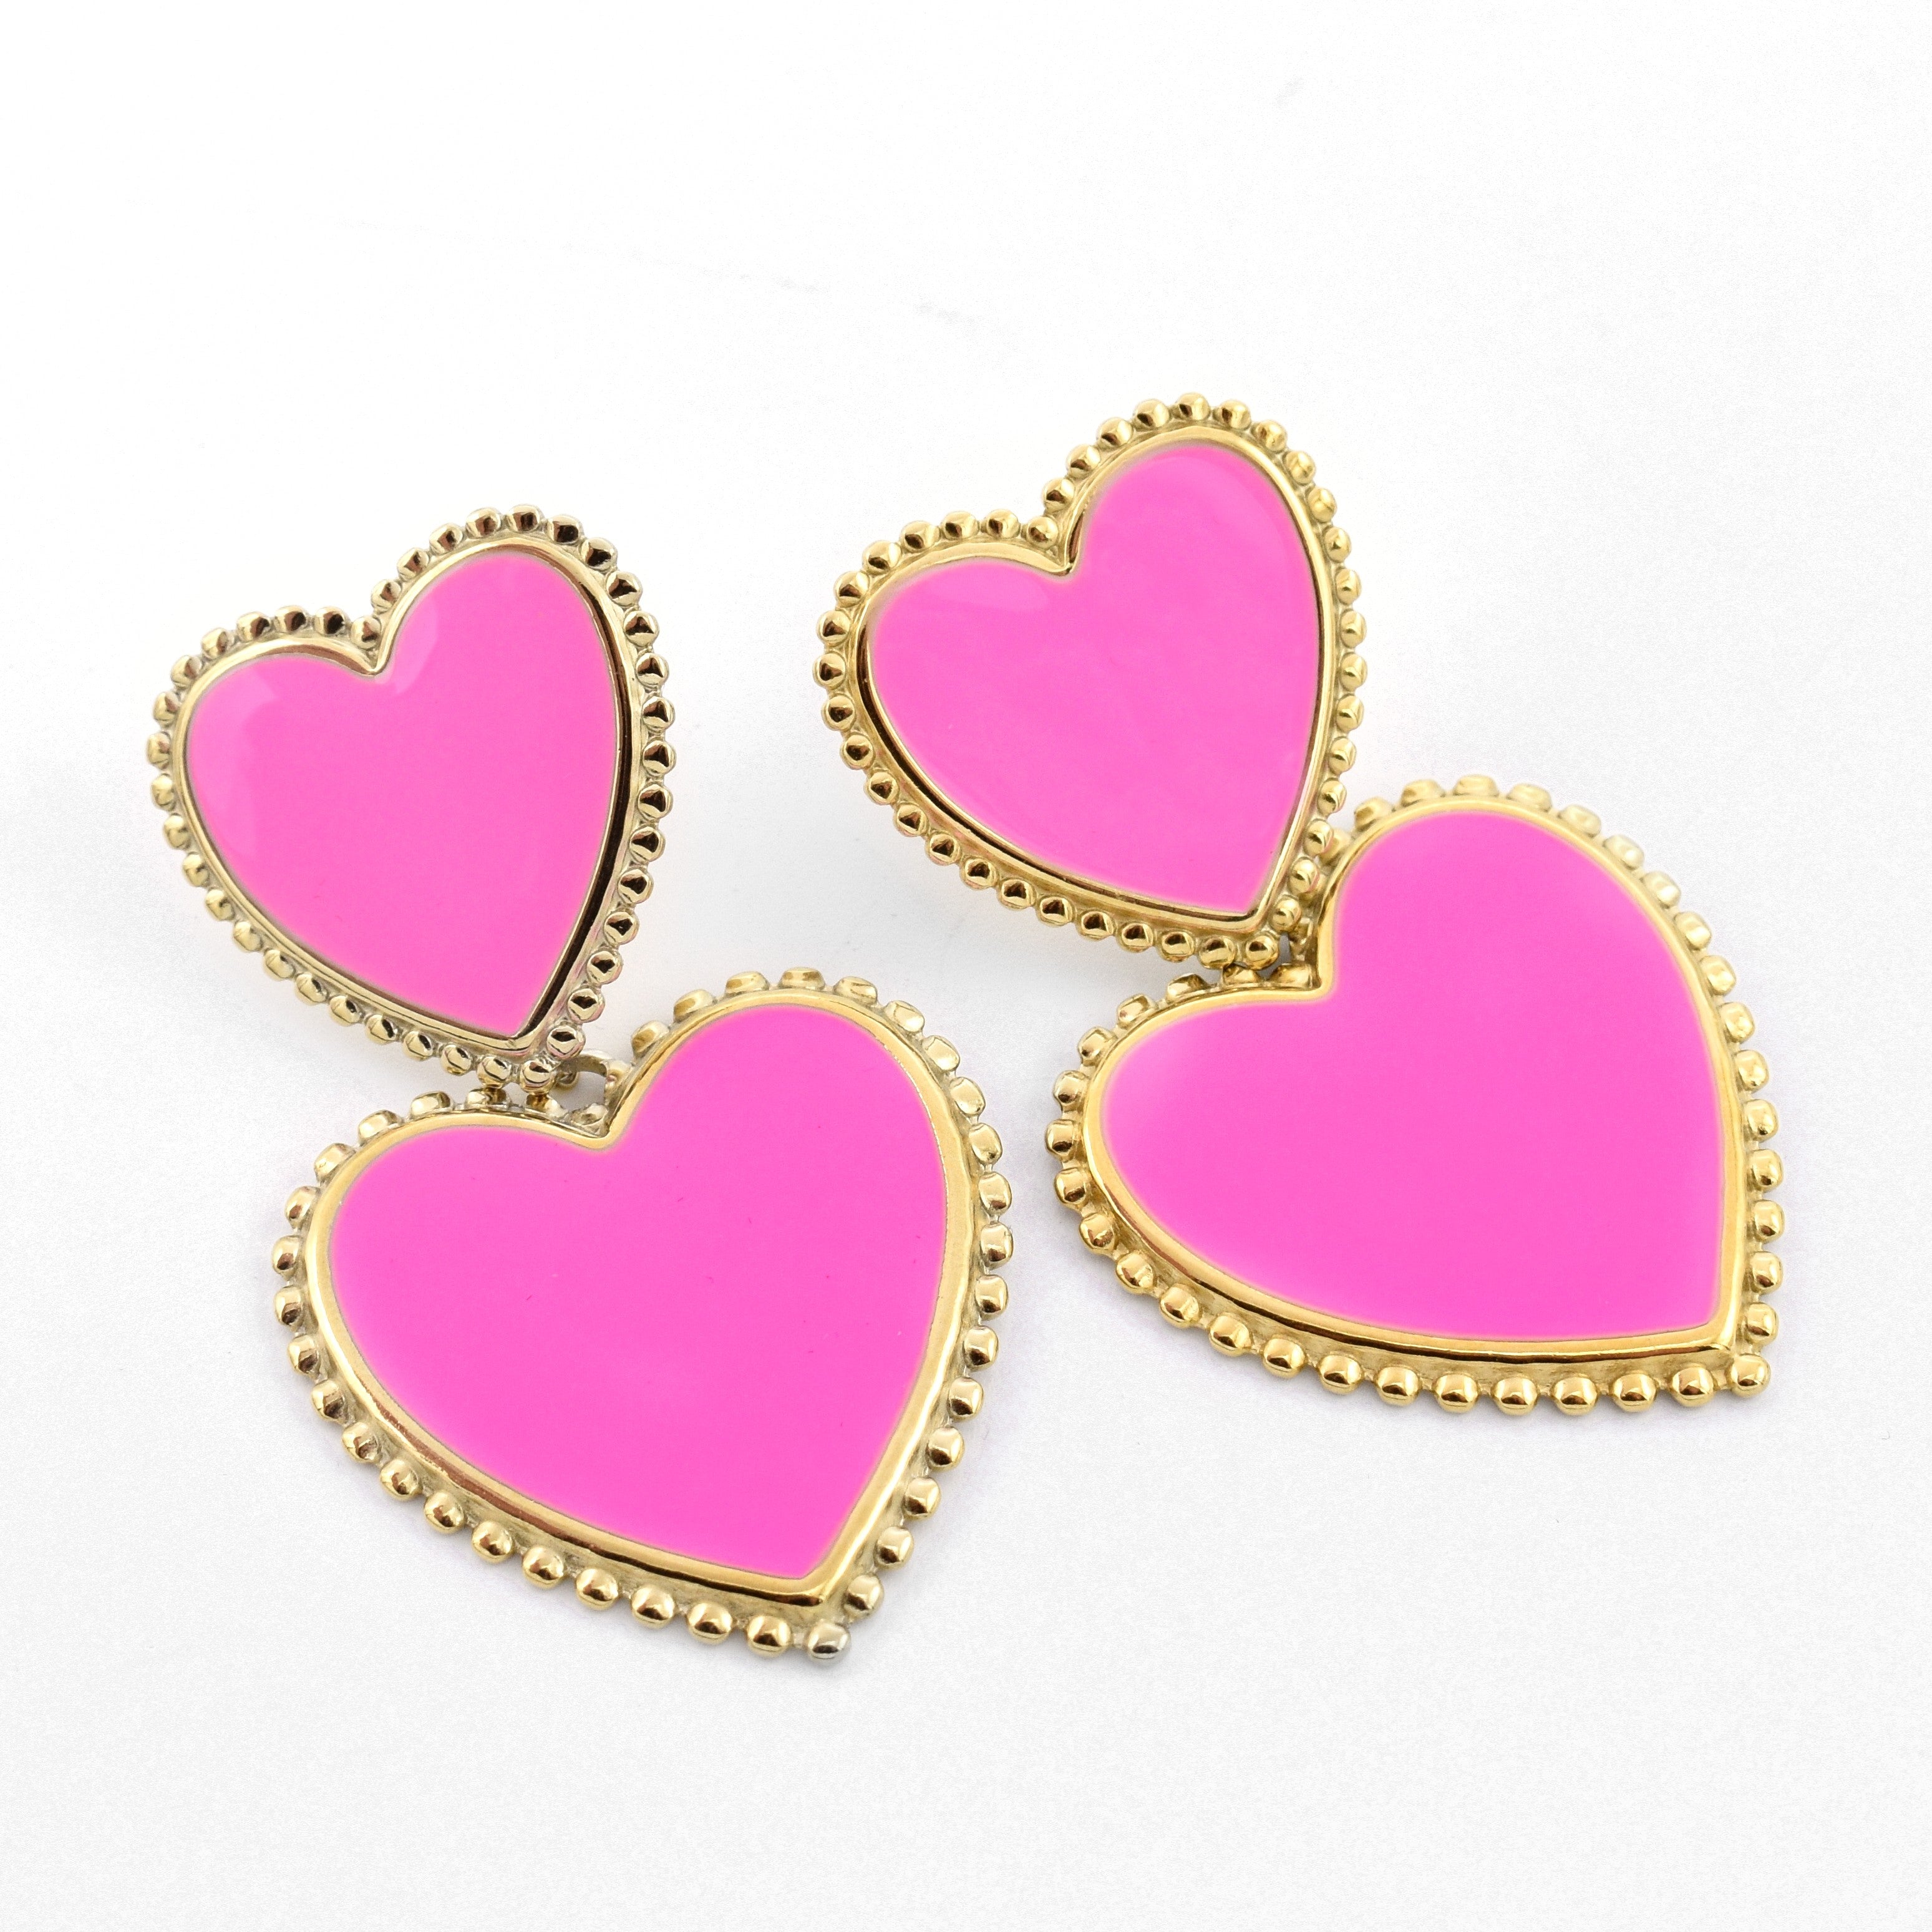 Statement Heart Earrings Pink